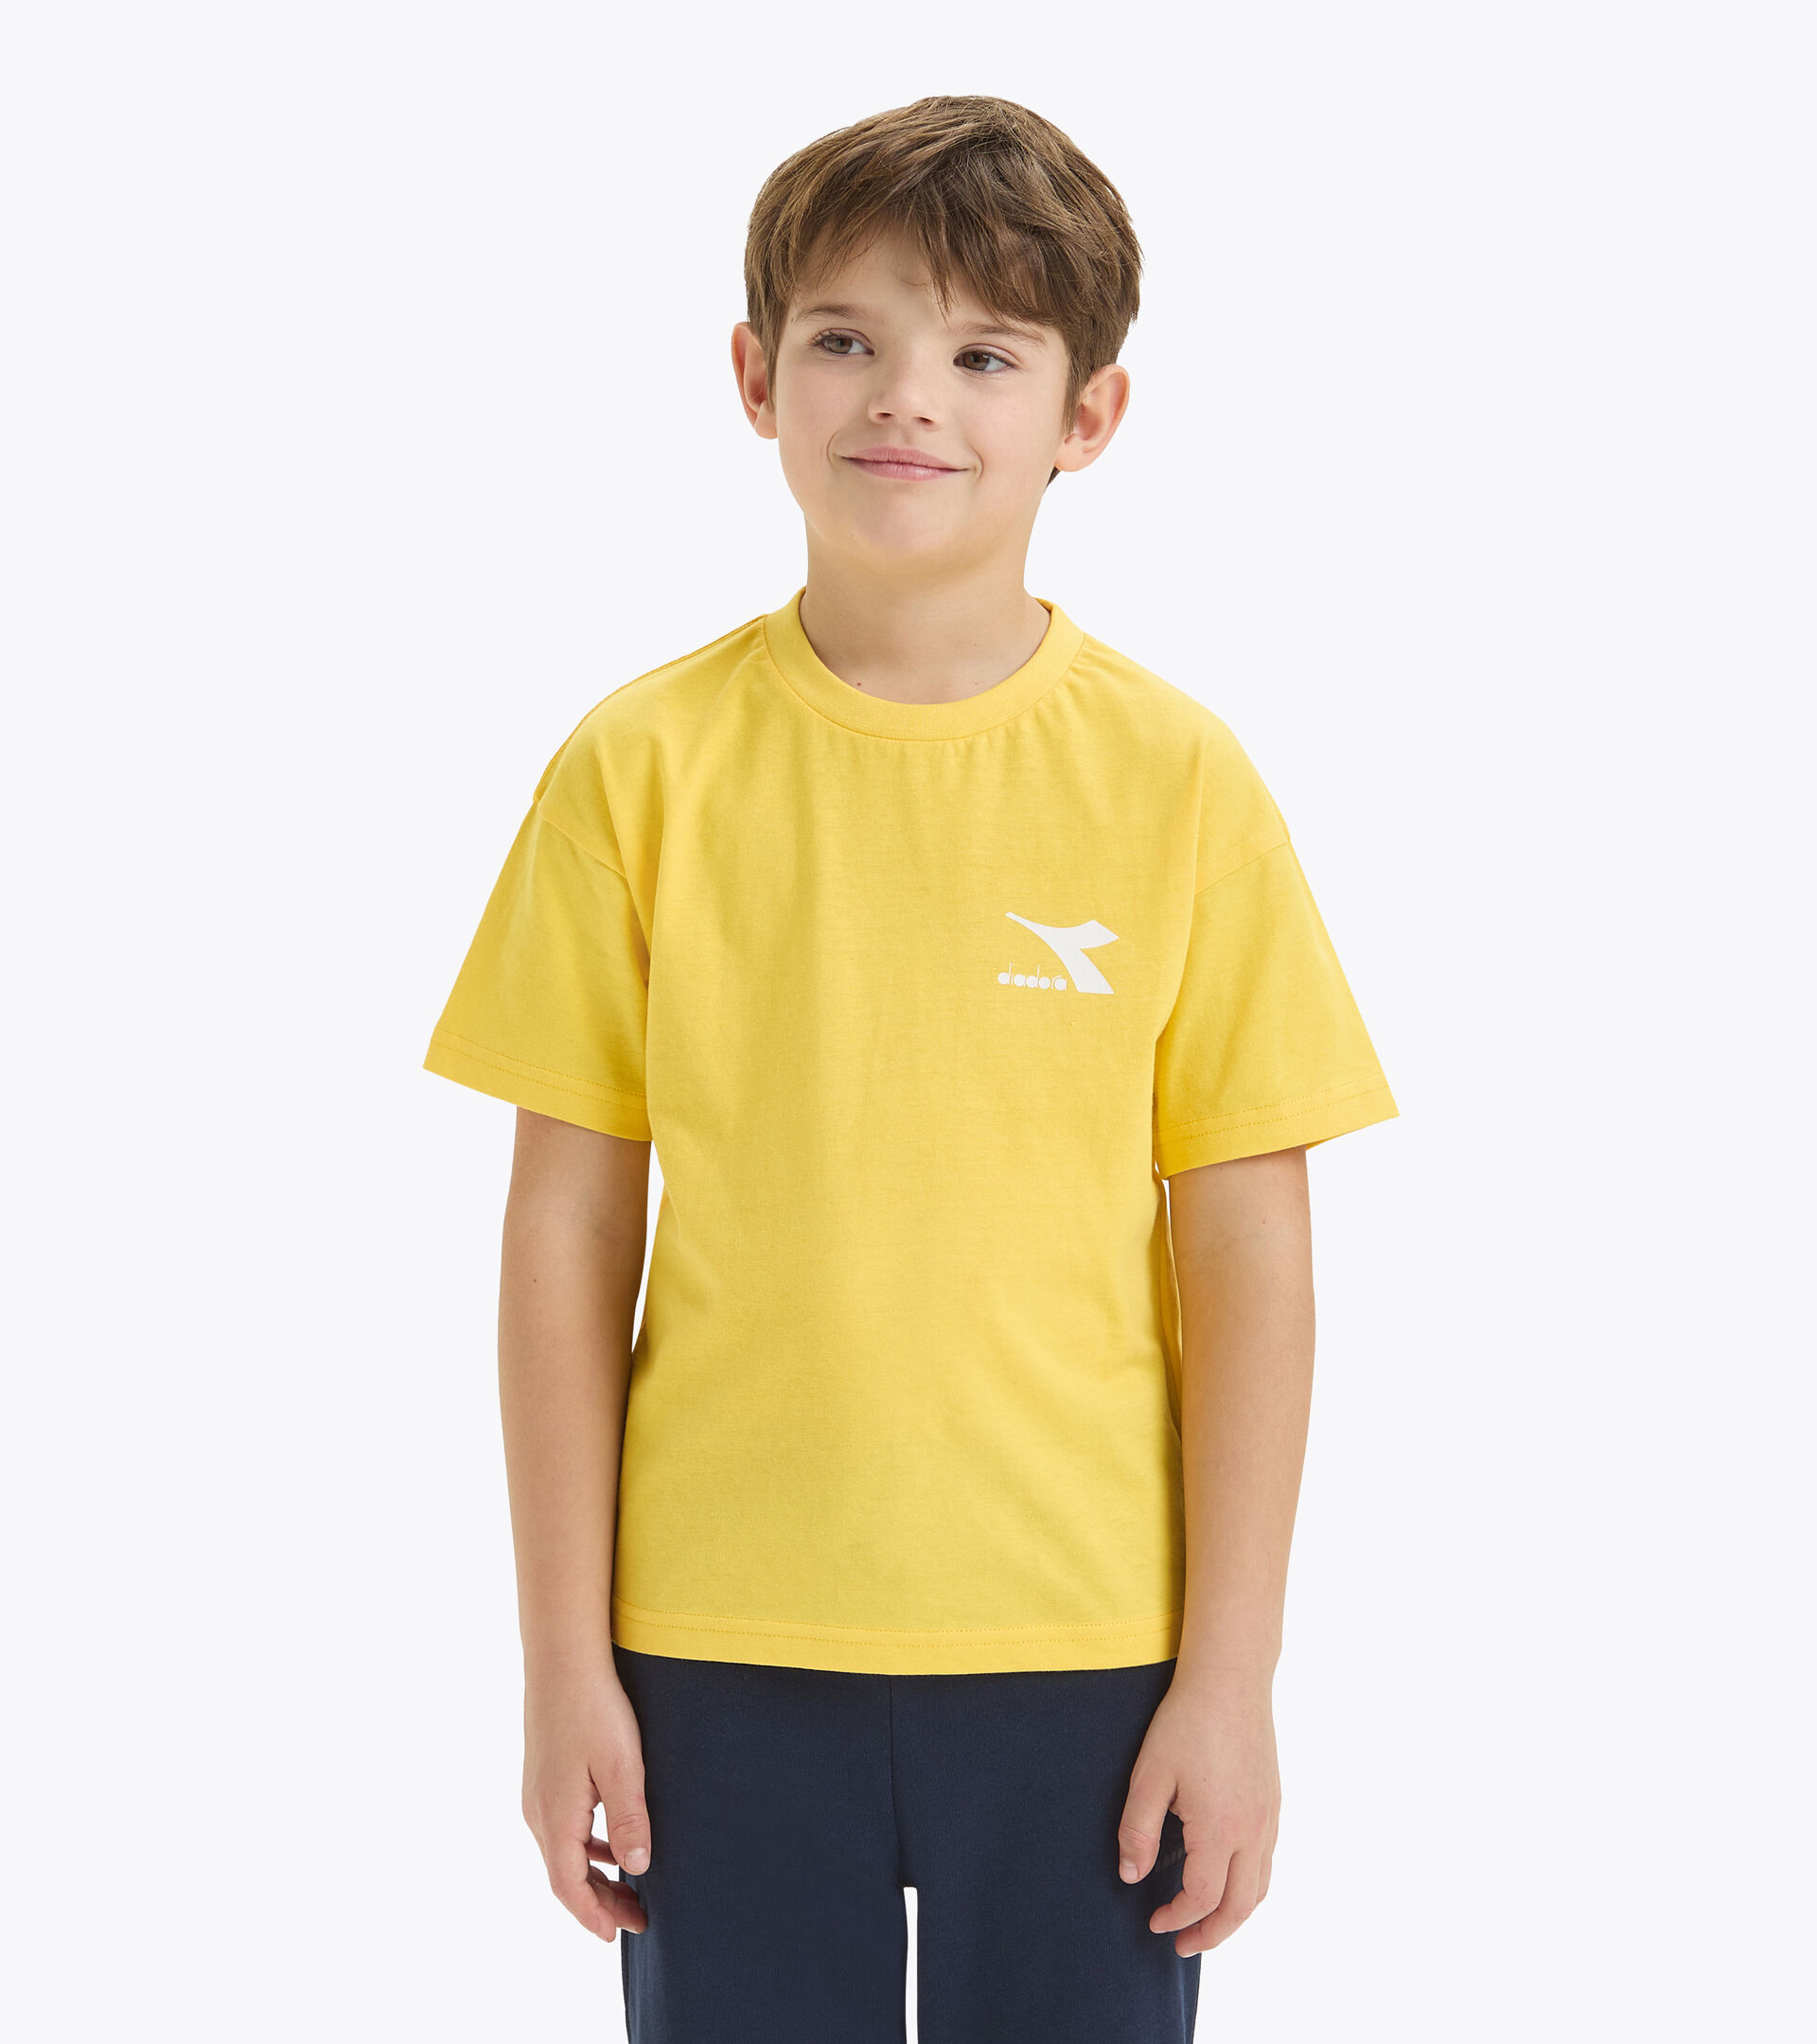 T-shirt in cotone - Bambini/e
 JU.T-SHIRT SS SL GIALLO PIOPPO - Diadora